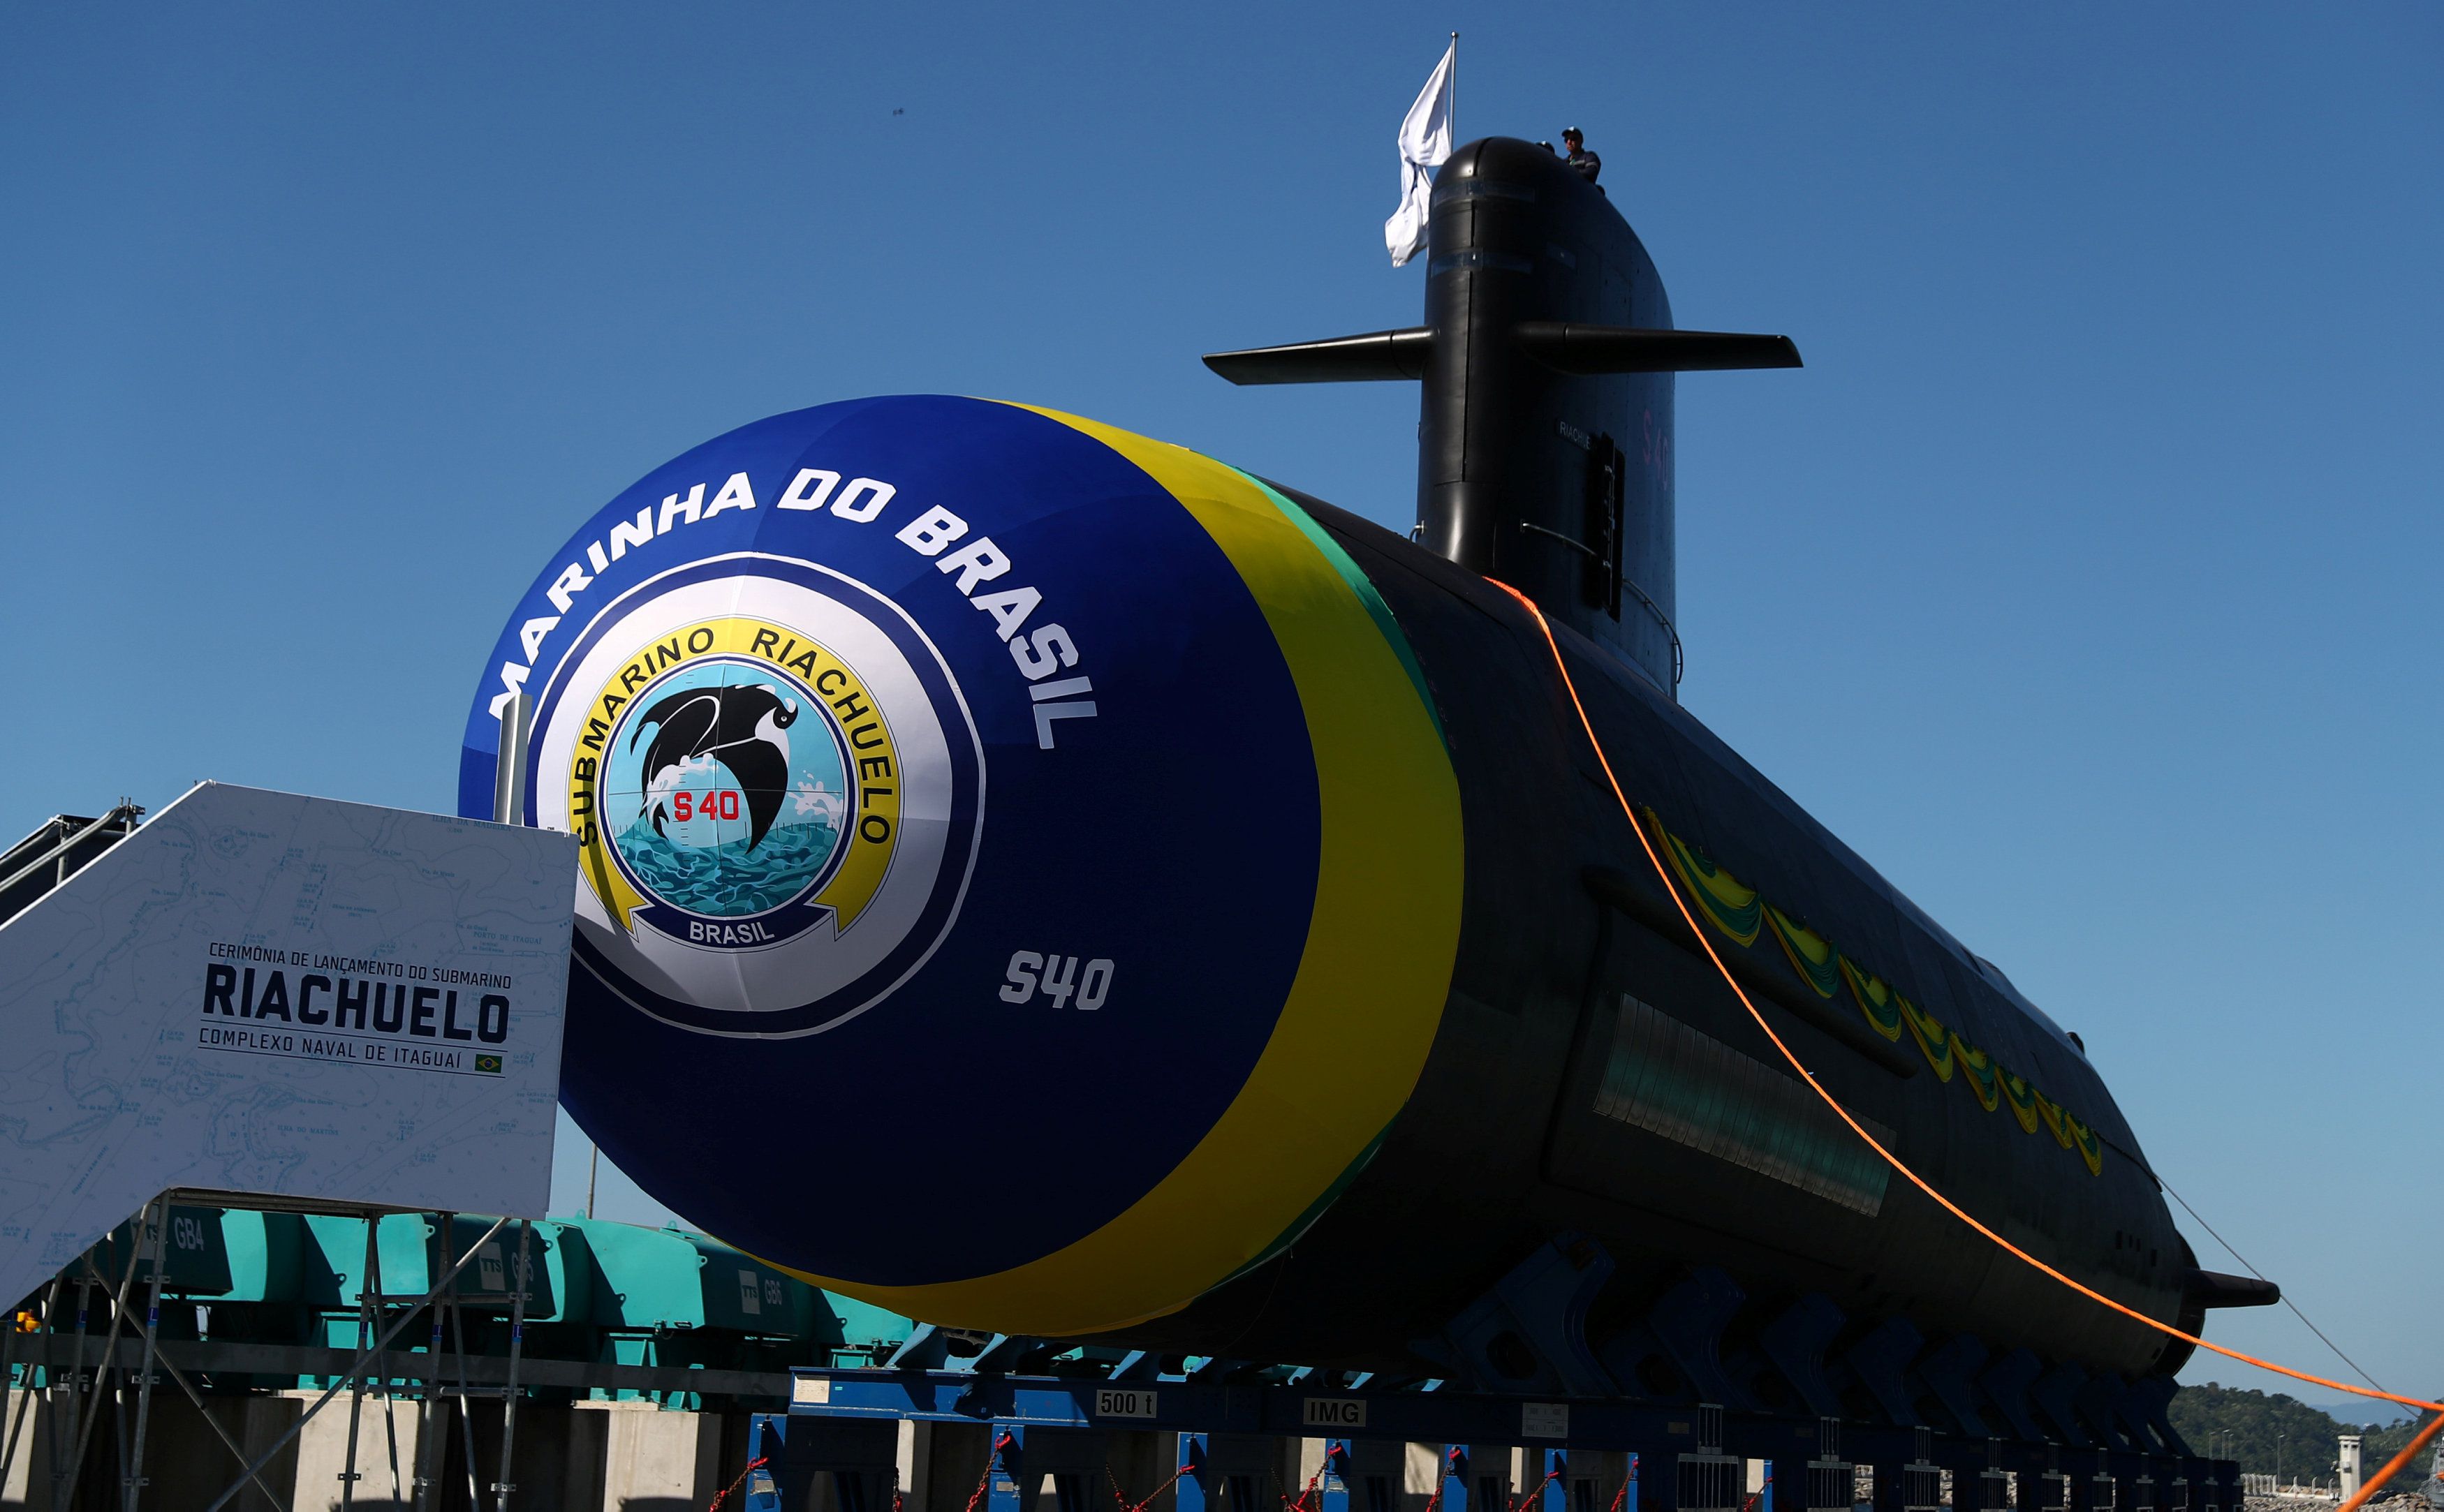 El submarino "Riachuelo", construido por el programa de desarrollo de submarinos (PROSUB), durante la ceremonia de inauguración en Itaguai el 14 de diciembre de 2018. (REUTERS/Pilar Olivares)